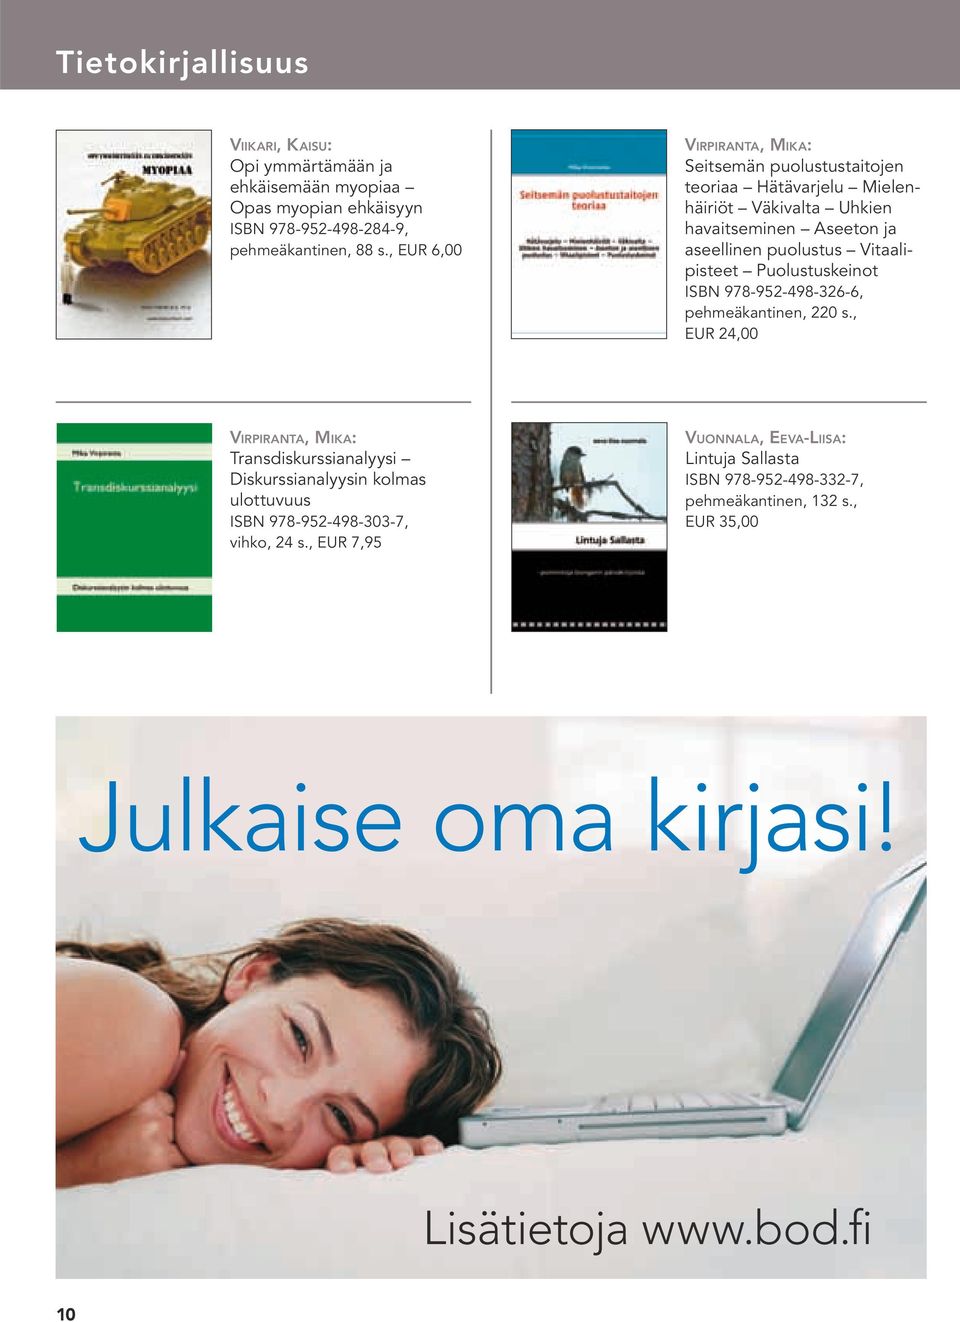 Vitaalipisteet Puolustuskeinot ISBN 978-952-498-326-6, pehmeäkantinen, 220 s.